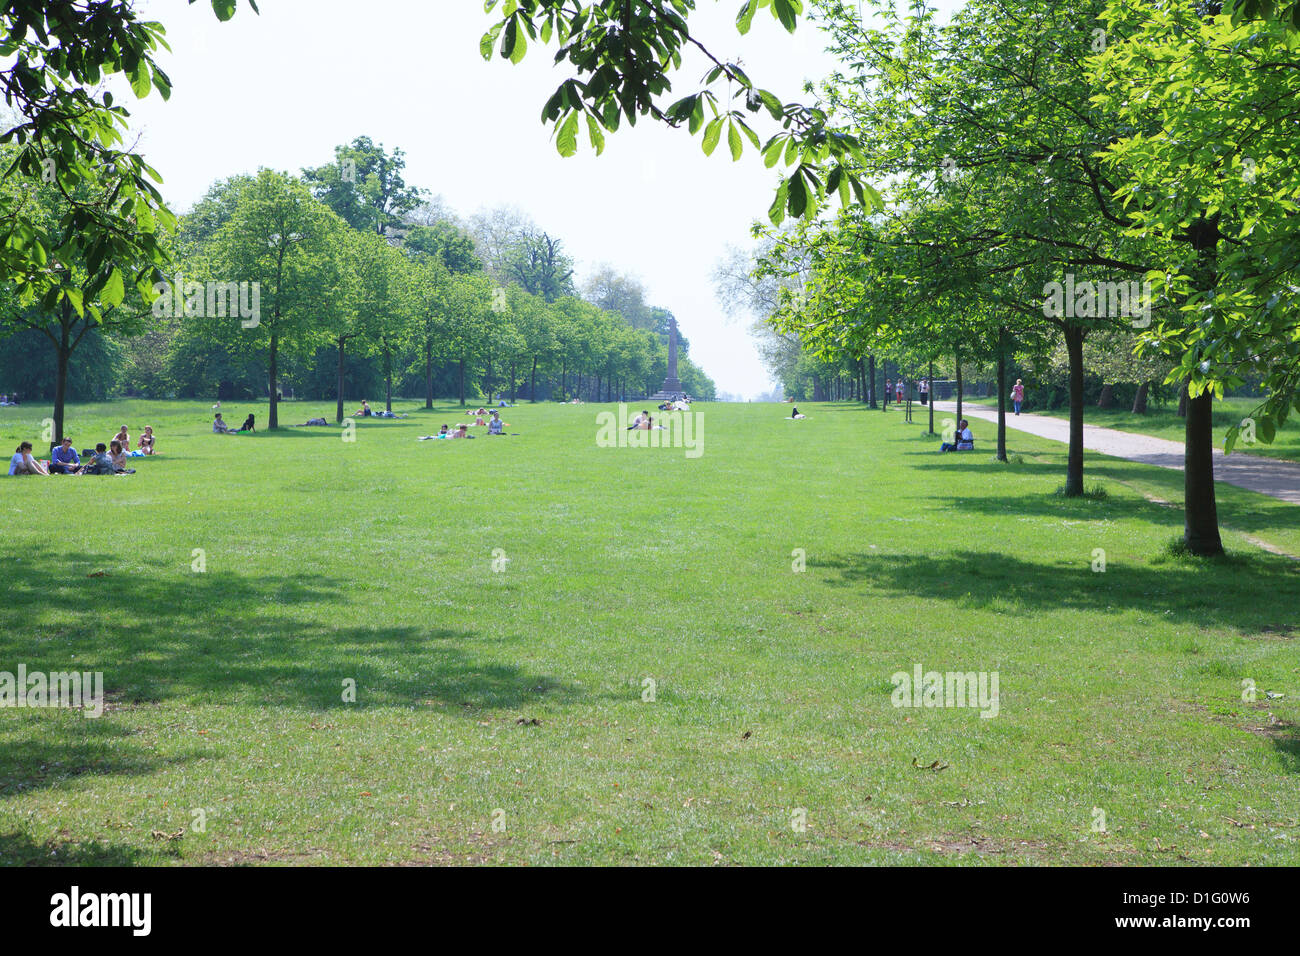 Les Jardins de Kensington, Londres, Angleterre, Royaume-Uni, Europe Banque D'Images